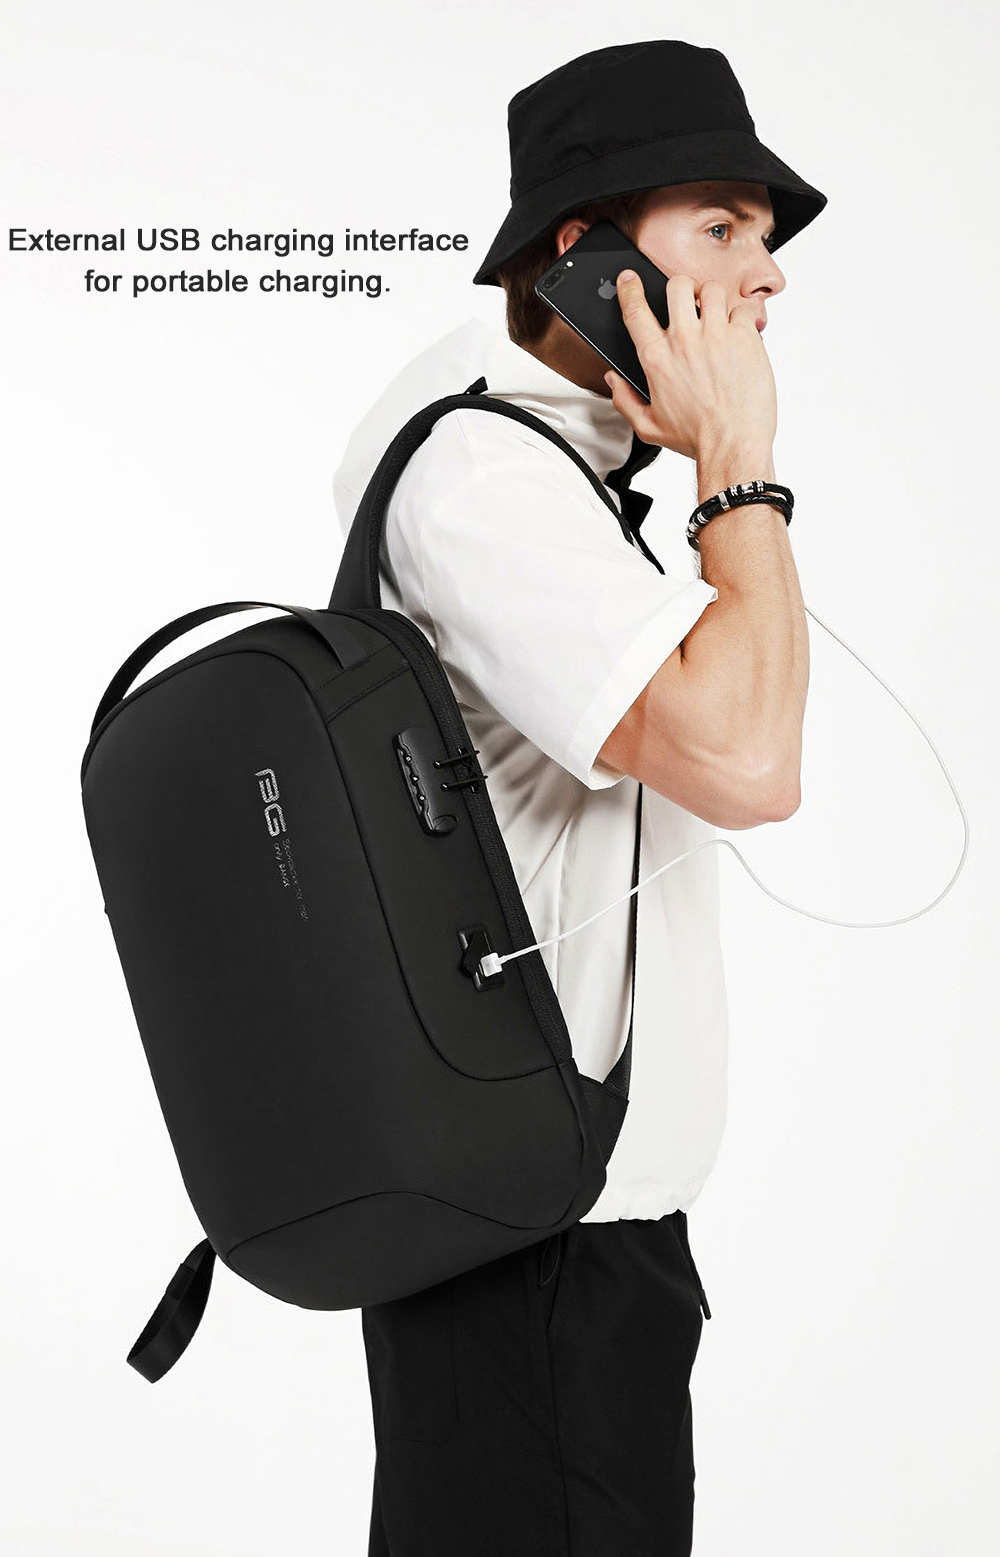 BANGE BG-7225 Anti-theft Backpack Laptop Bag Shoulder Bag USB Charging Men Business Travel Storage Bag for 15.6 inch Laptop